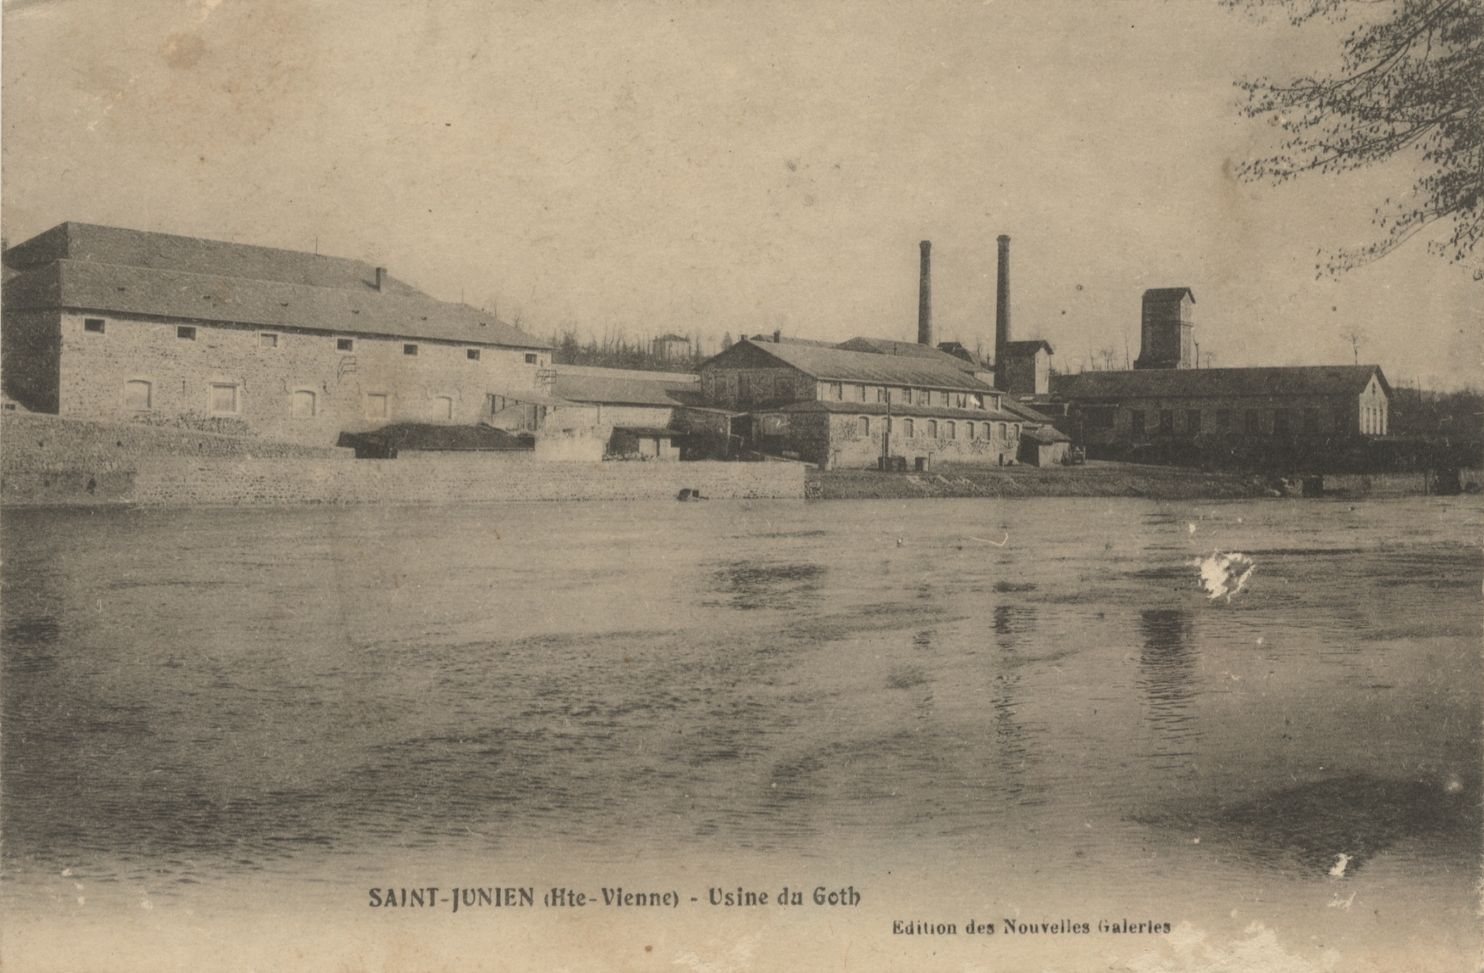 L'usine du Goth vers 1910. Carte postale, éditions des Nouvelles Galeries. 